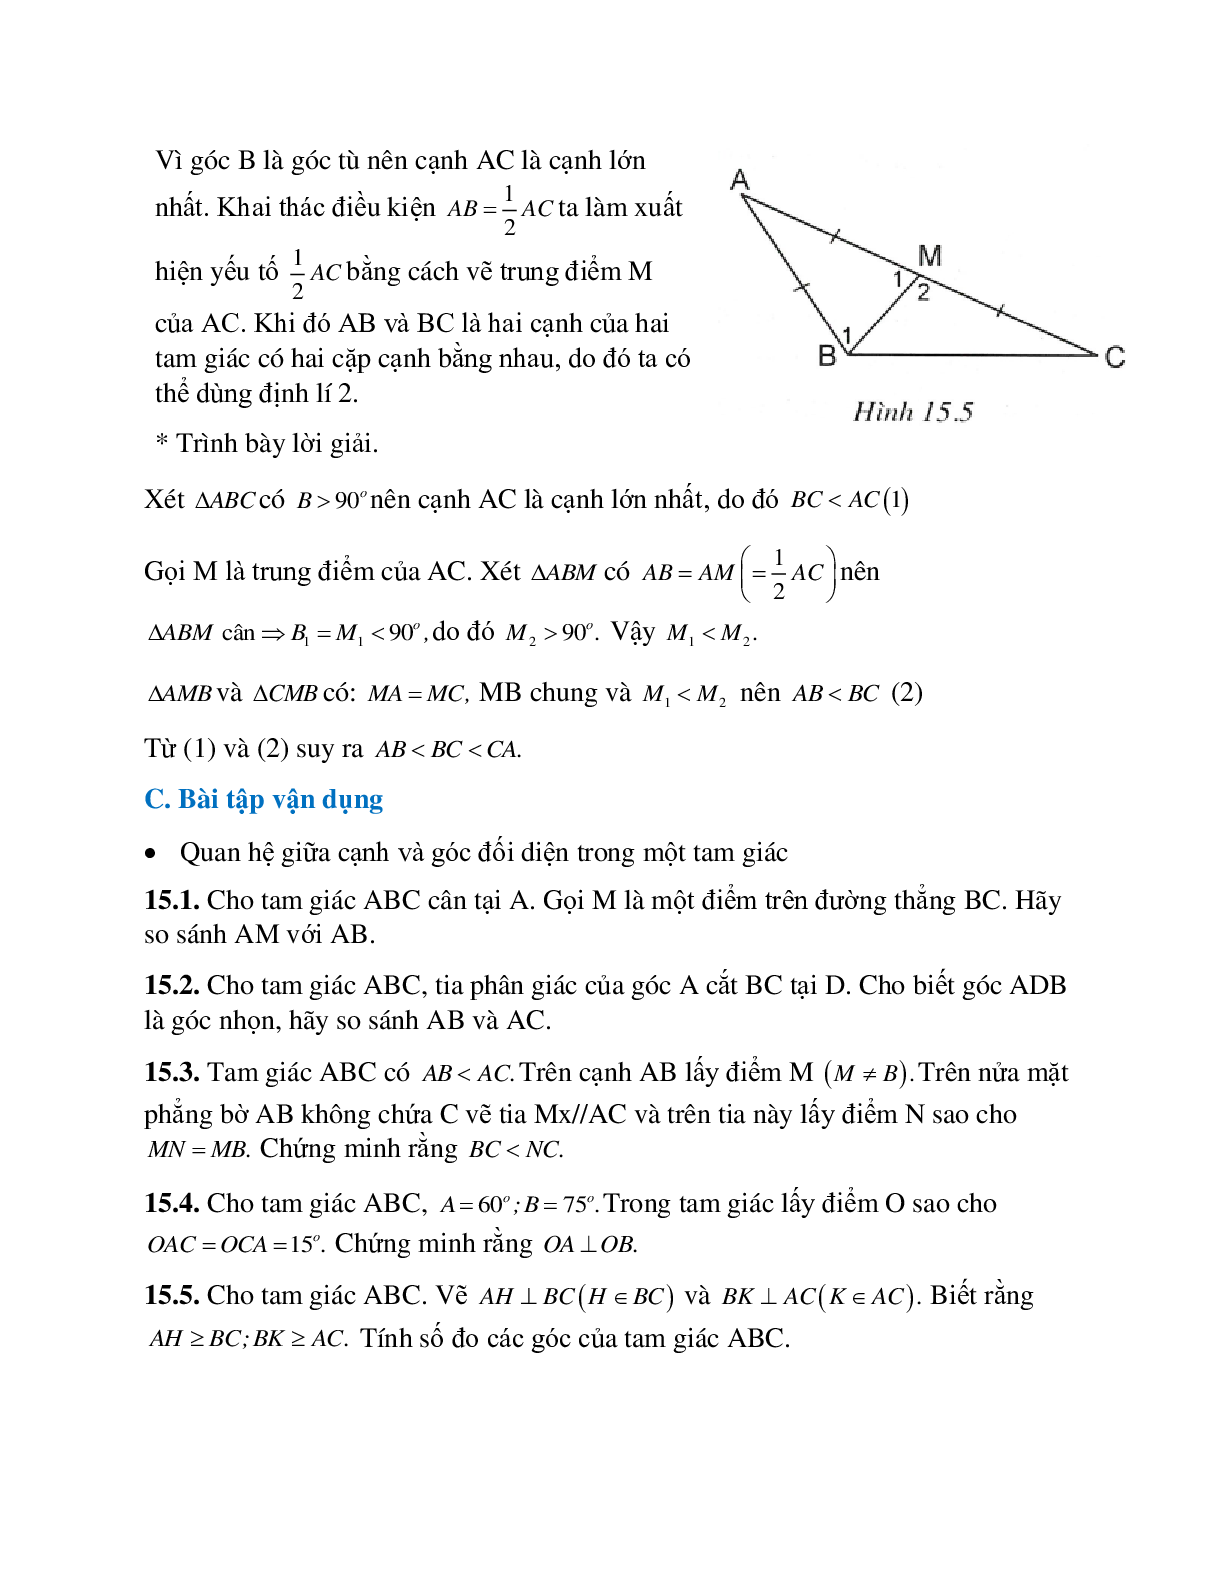 Phương pháp giải bài tập về Quan hệ giữa góc và cạnh đối diện trong một tam giác chọn lọc (trang 4)